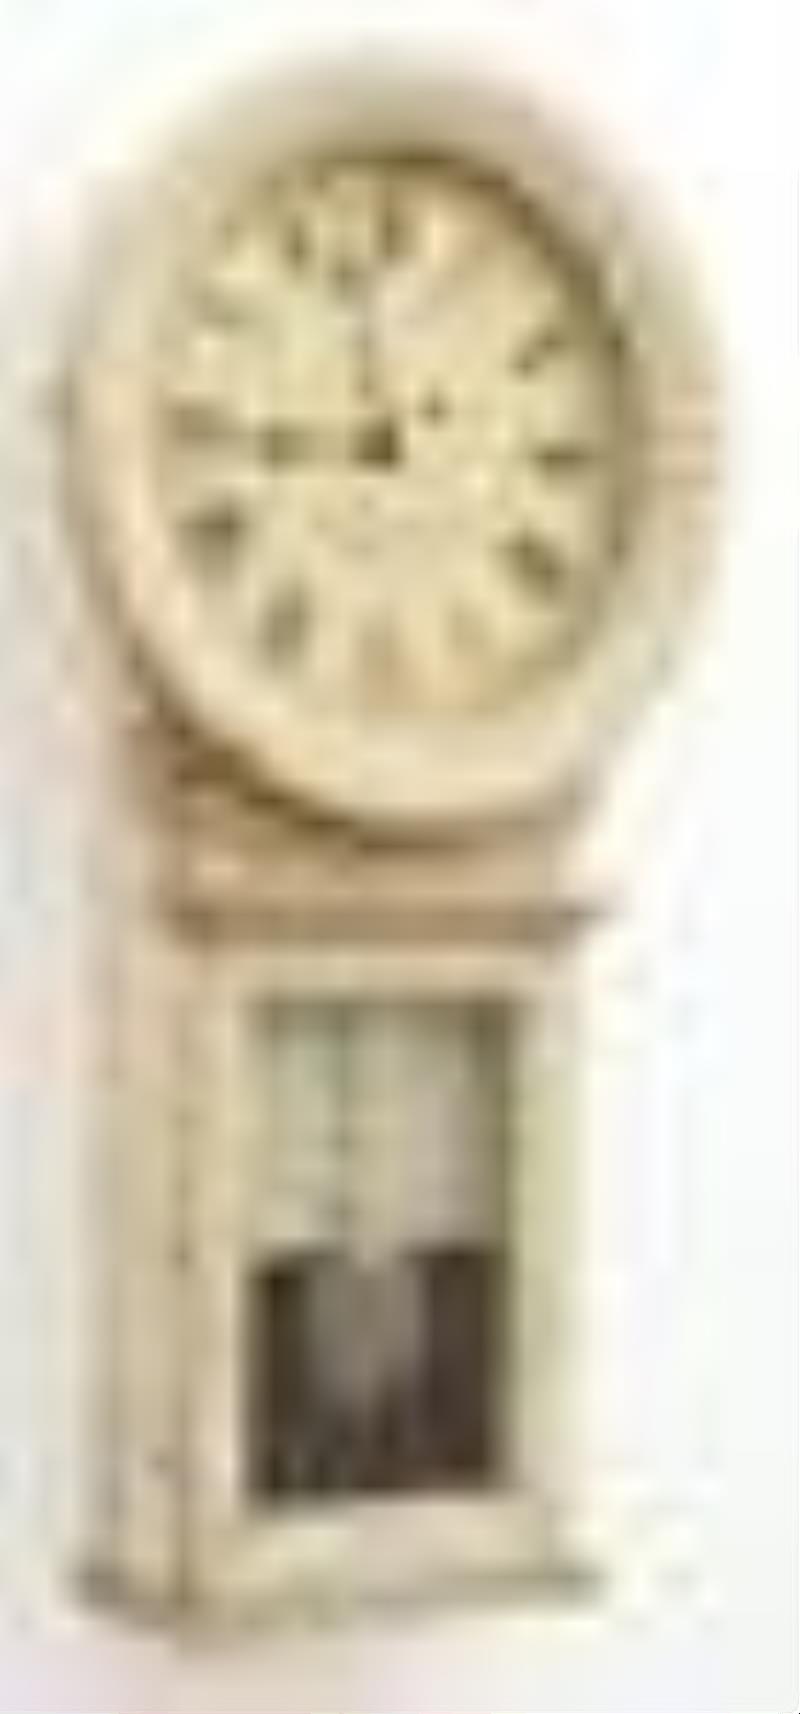 Chelsea Clock Co. Regulator No. 1 Wall Clock